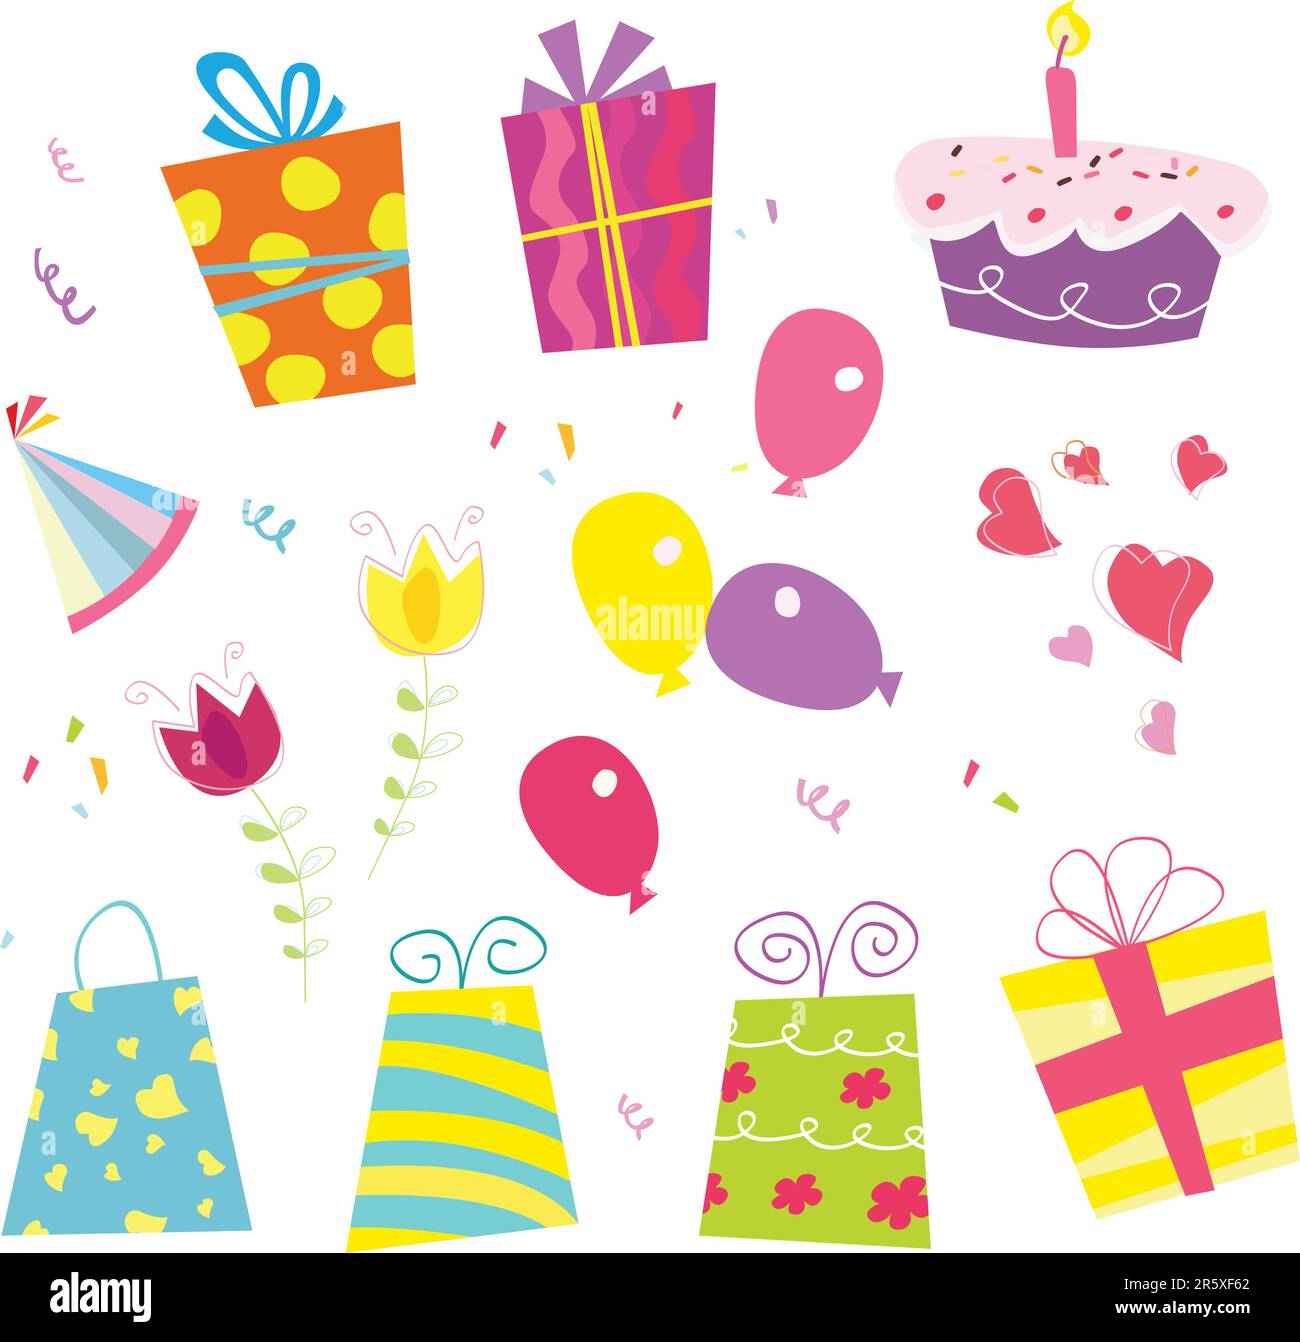 Geburtstagsvektorset. Einschließlich Geburtstagsgeschenke, Ballon, Blume, Kuchen, Band und Geburtstagsmütze. Stock Vektor